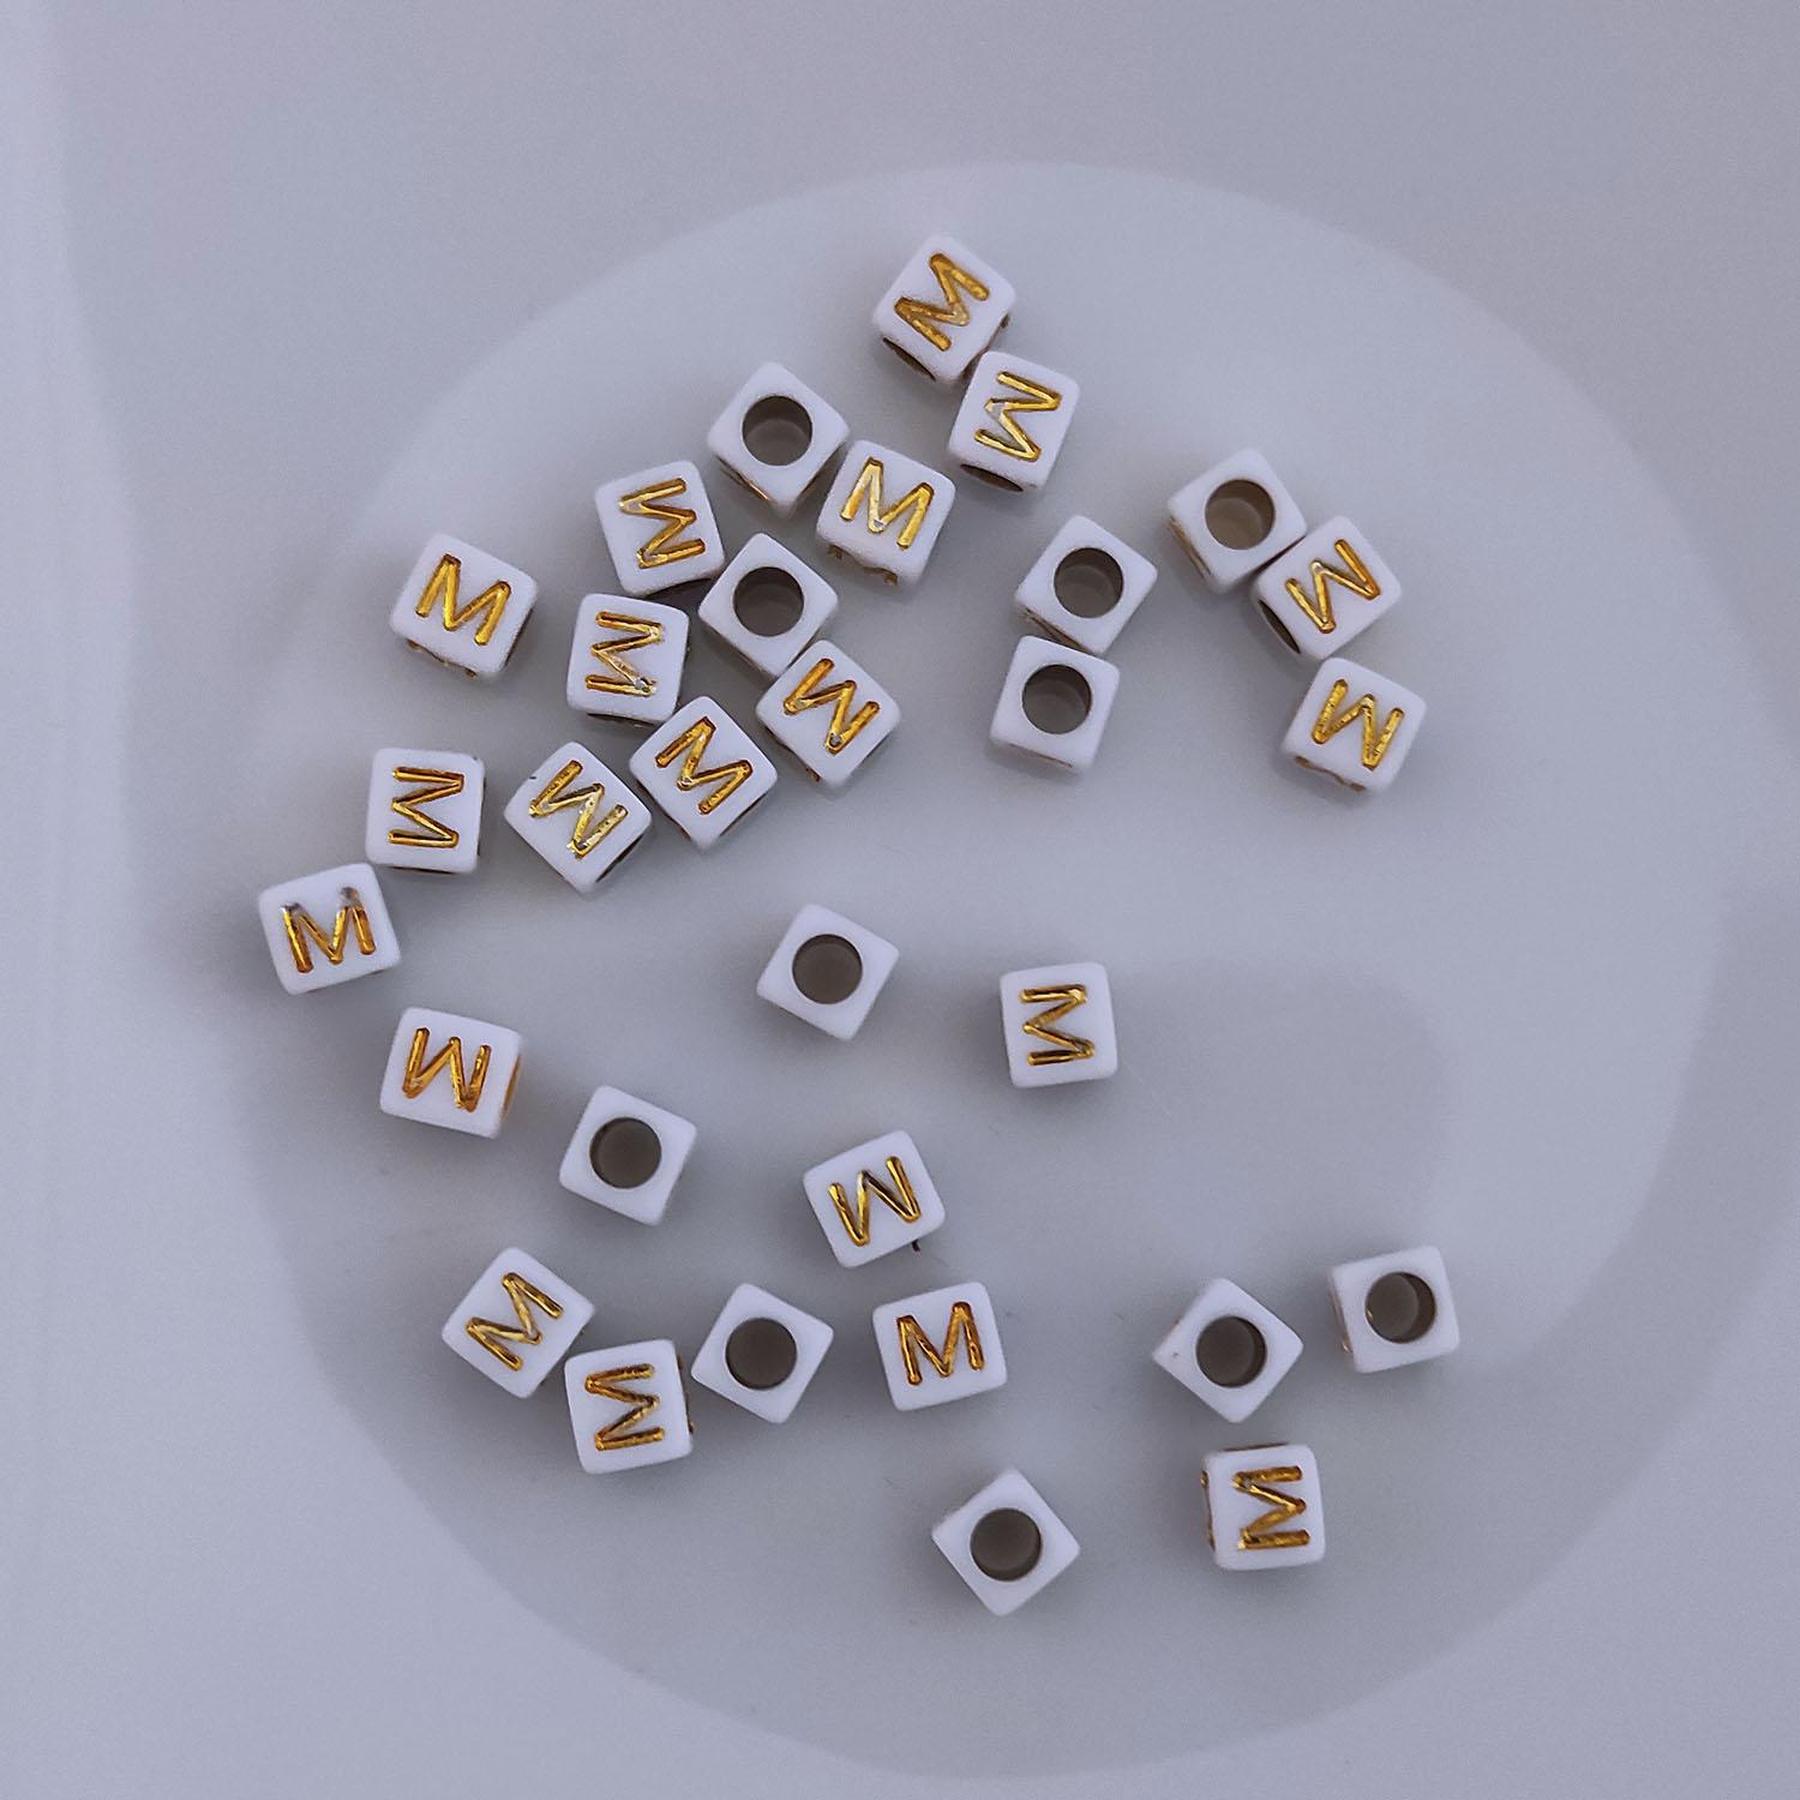 Buchstaben Perlen, 30 Stück, 6x6 mm, weiß mit gold, eckig, Buchstabe M